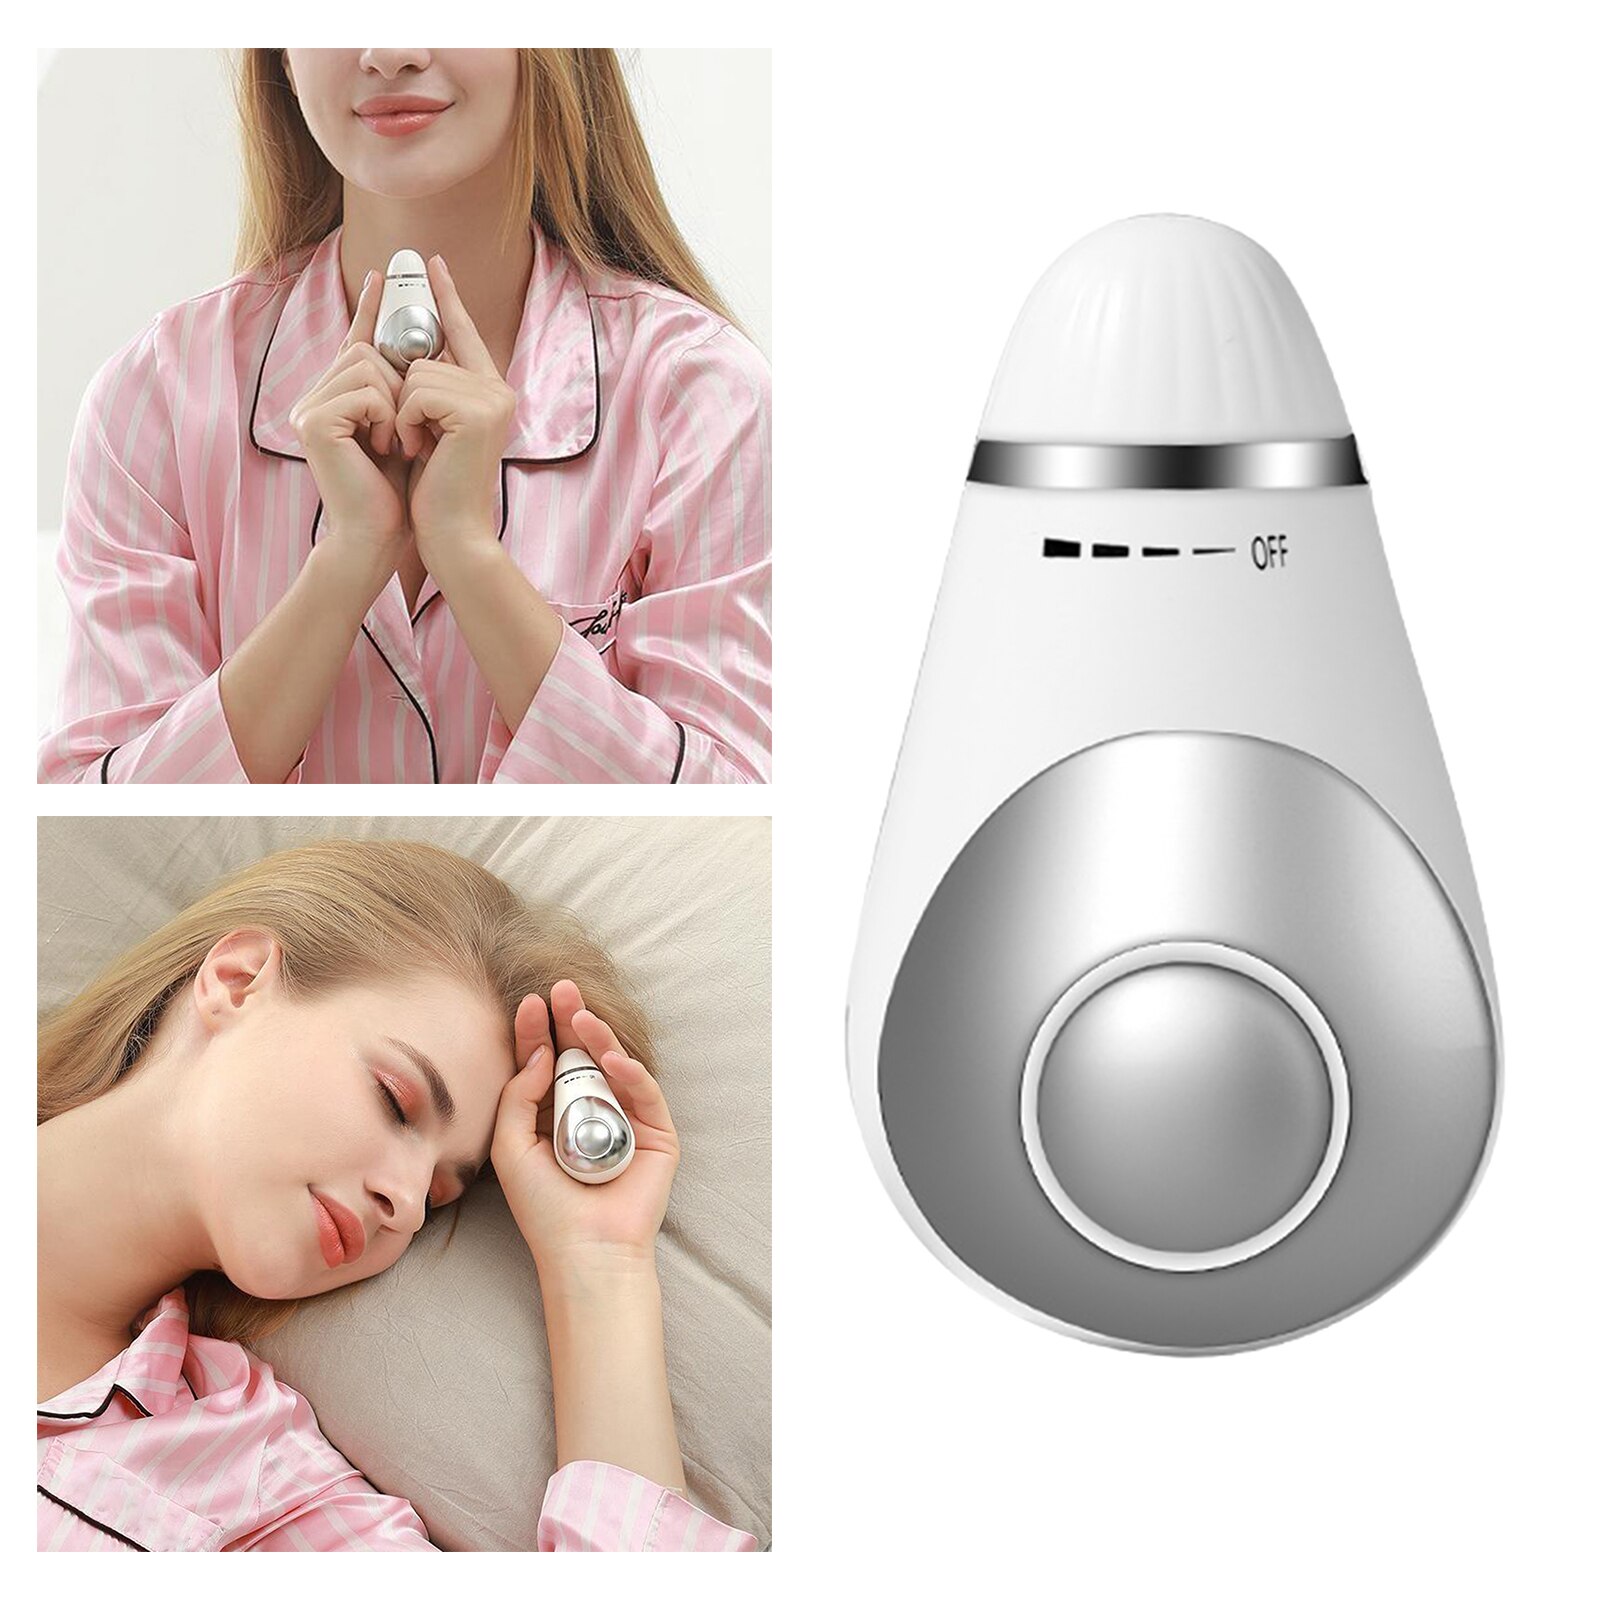 Bærbart håndholdt søvnhjælpemiddel, mikrostrøm intelligent søvnenhed hurtigt værktøj til søvnhjælp: Hvid